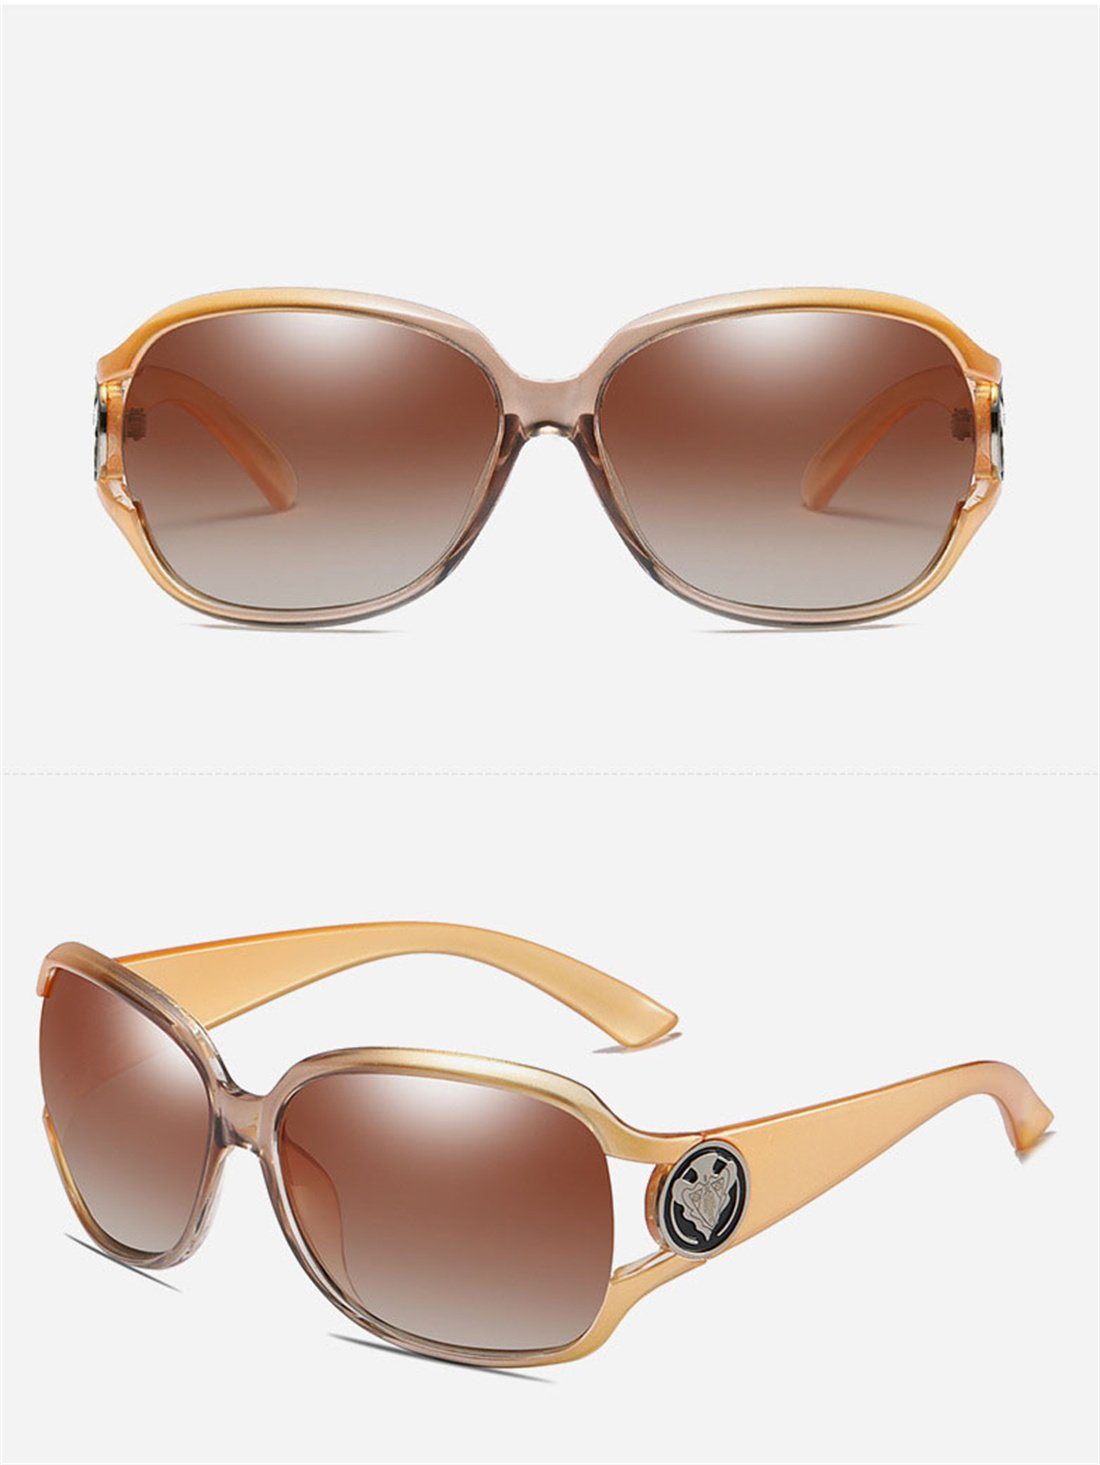 DÖRÖY Sonnenbrille Sonnenbrillen Frauen, Outdoor-Sonnenbrillen Polarisierende C für